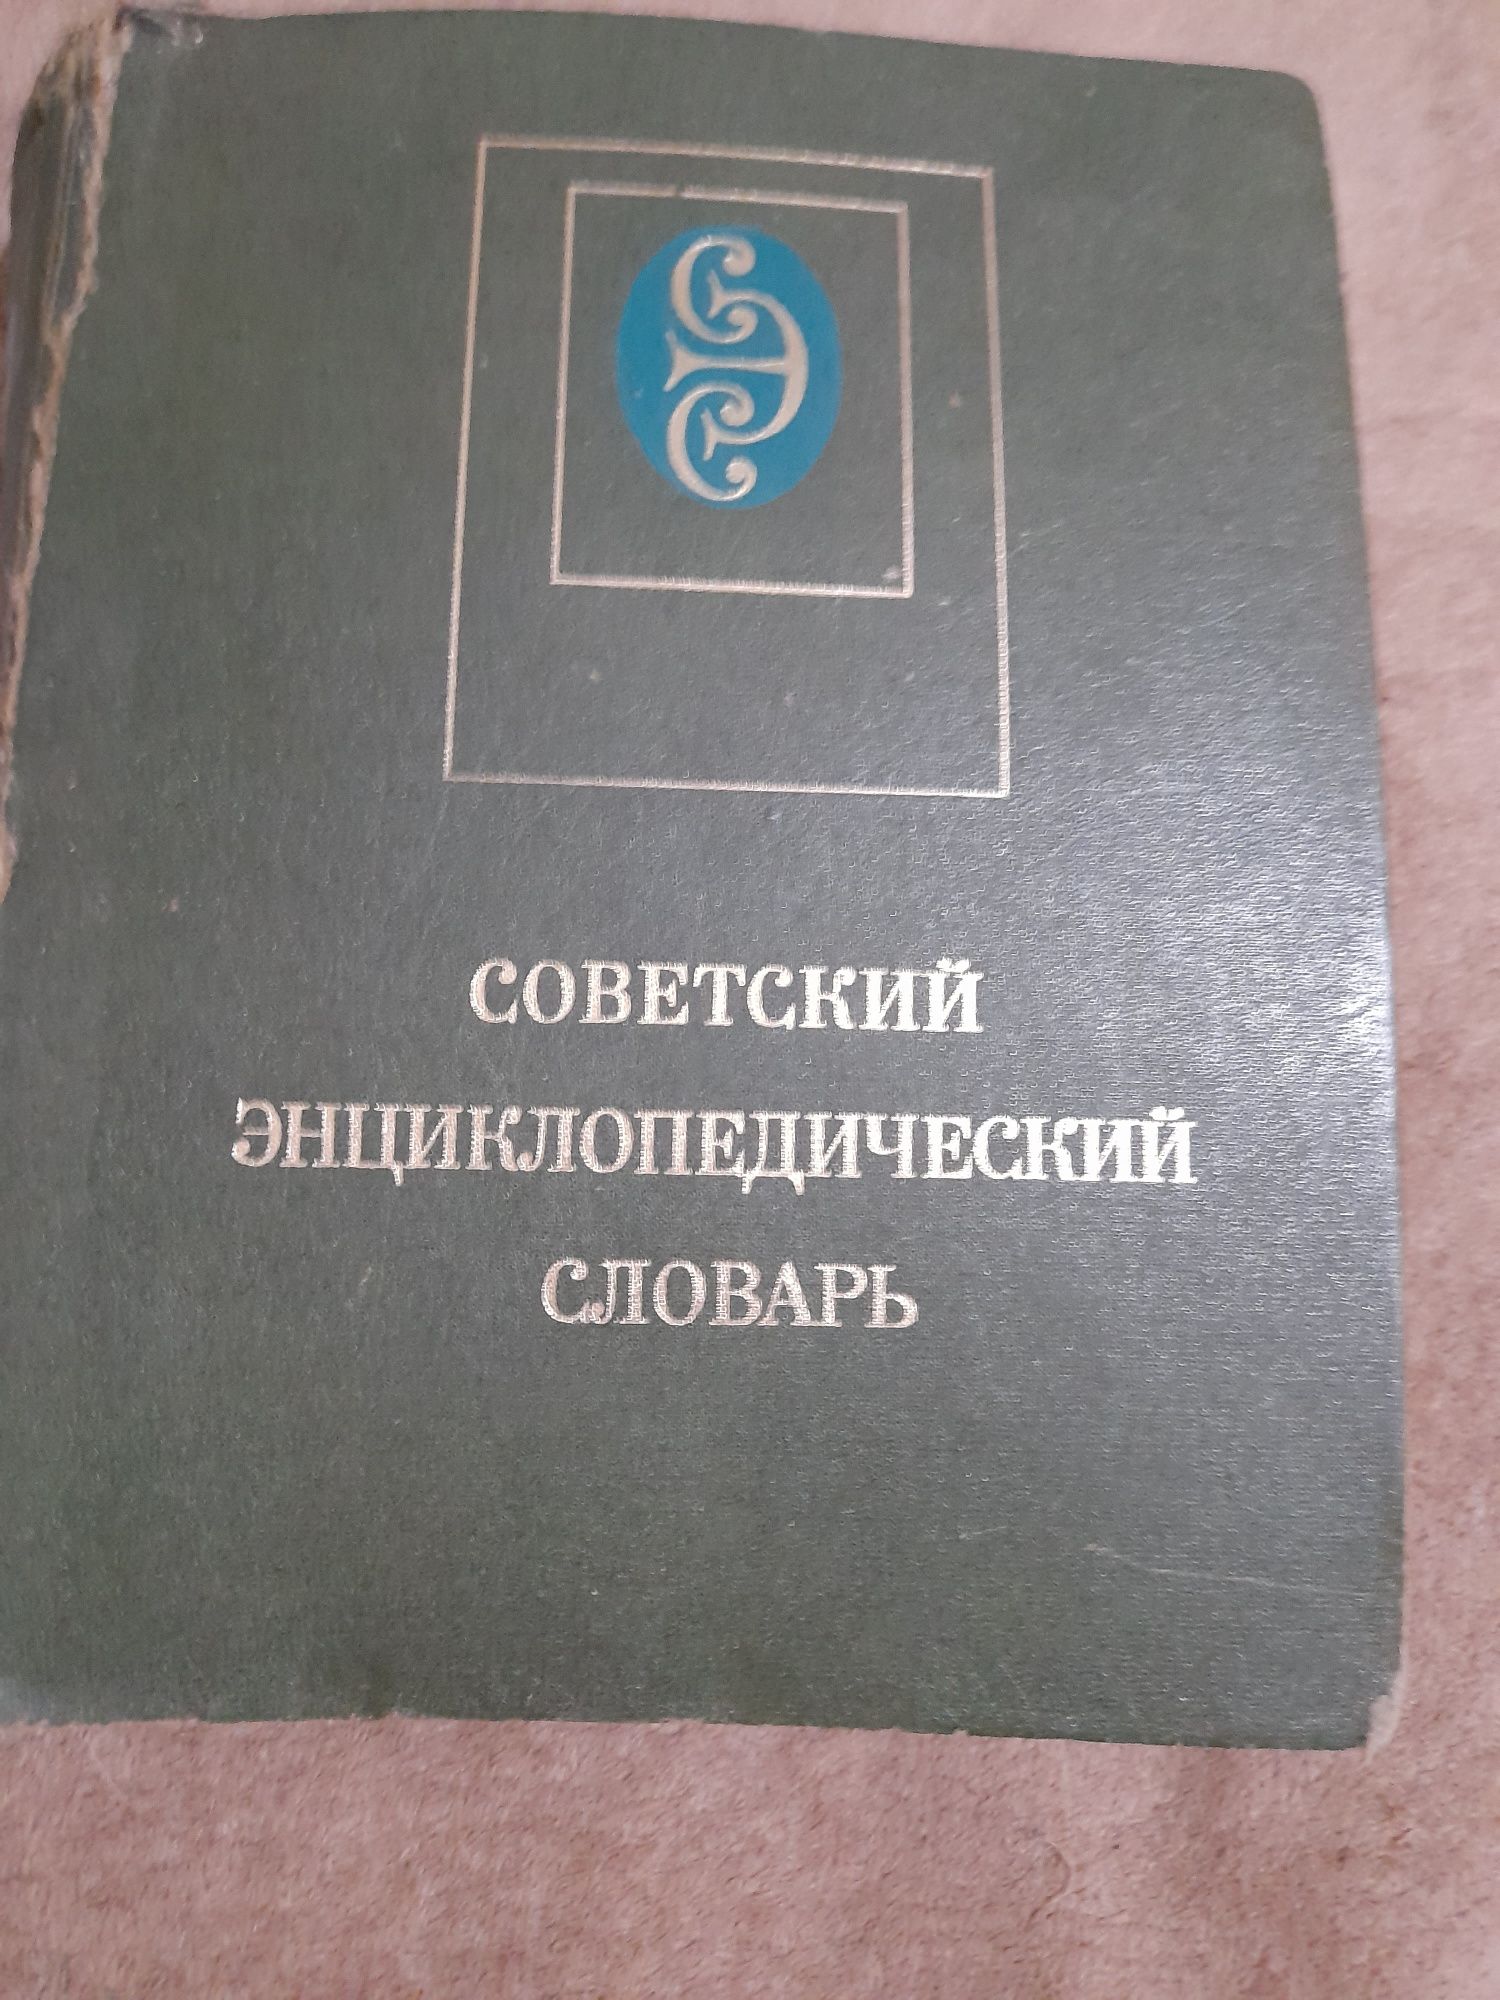 Советский энциклопелический словарь  ,издательство " Советская энцикло